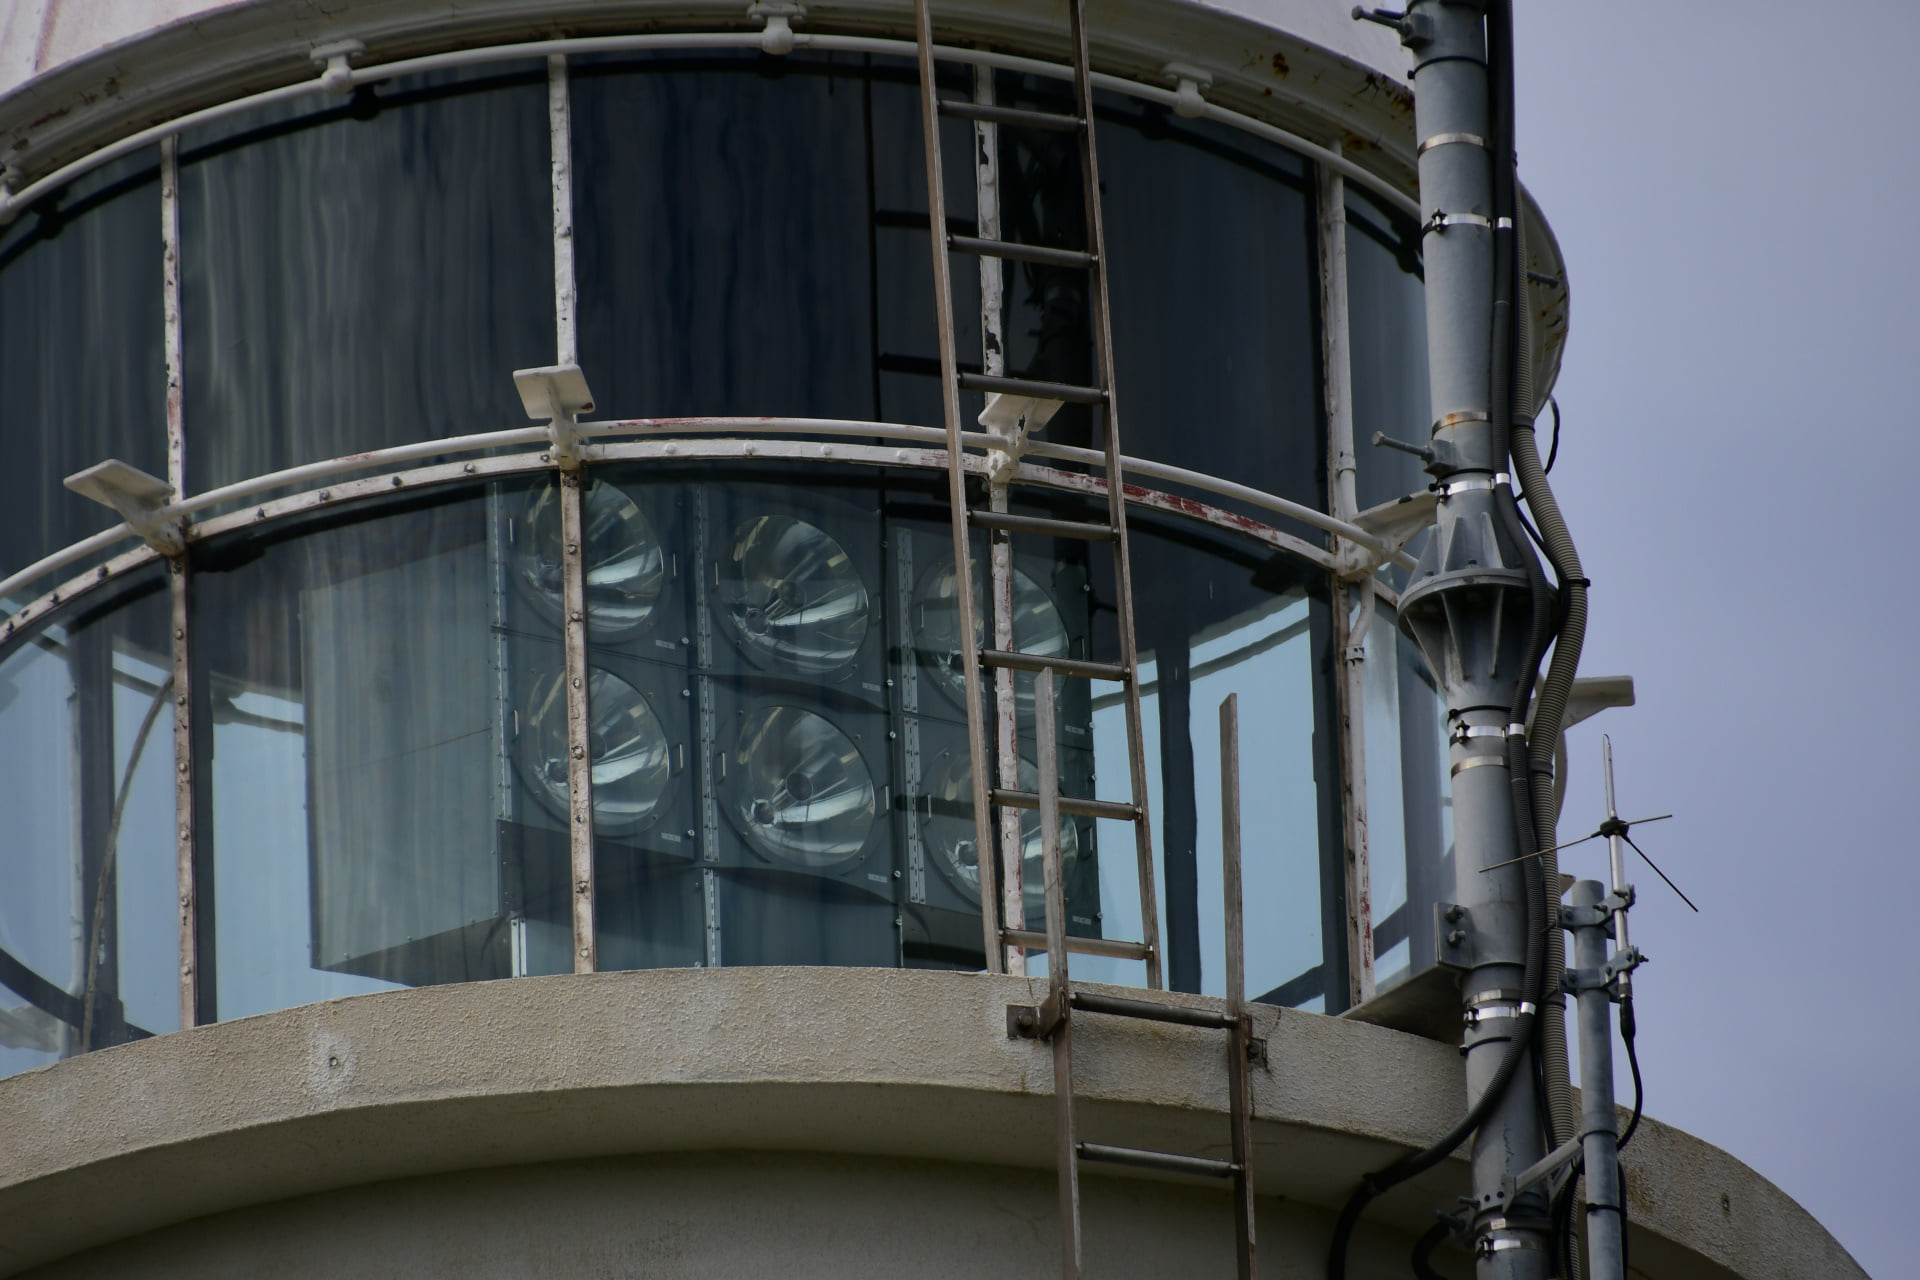 この灯台のLU-M灯器は変わっている。６個のレンズが対面についている。この構造は私の知る限りここのみ。主と副がどのレンズなのか光る所を見てみたかったがパスして次へ。